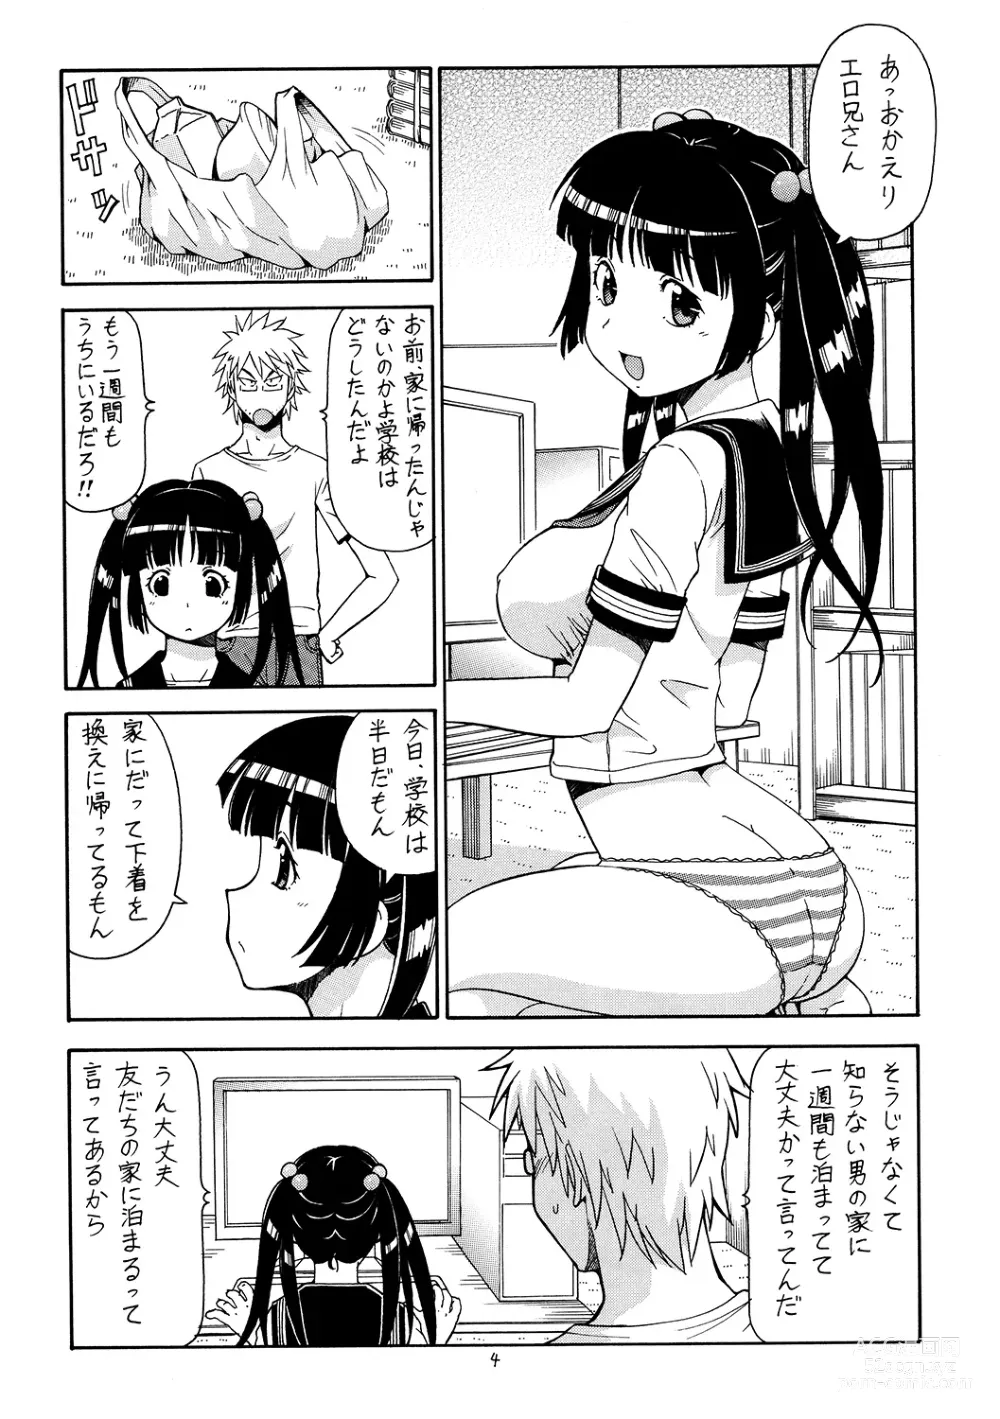 Page 5 of doujinshi Ita Yome Monogatari 2